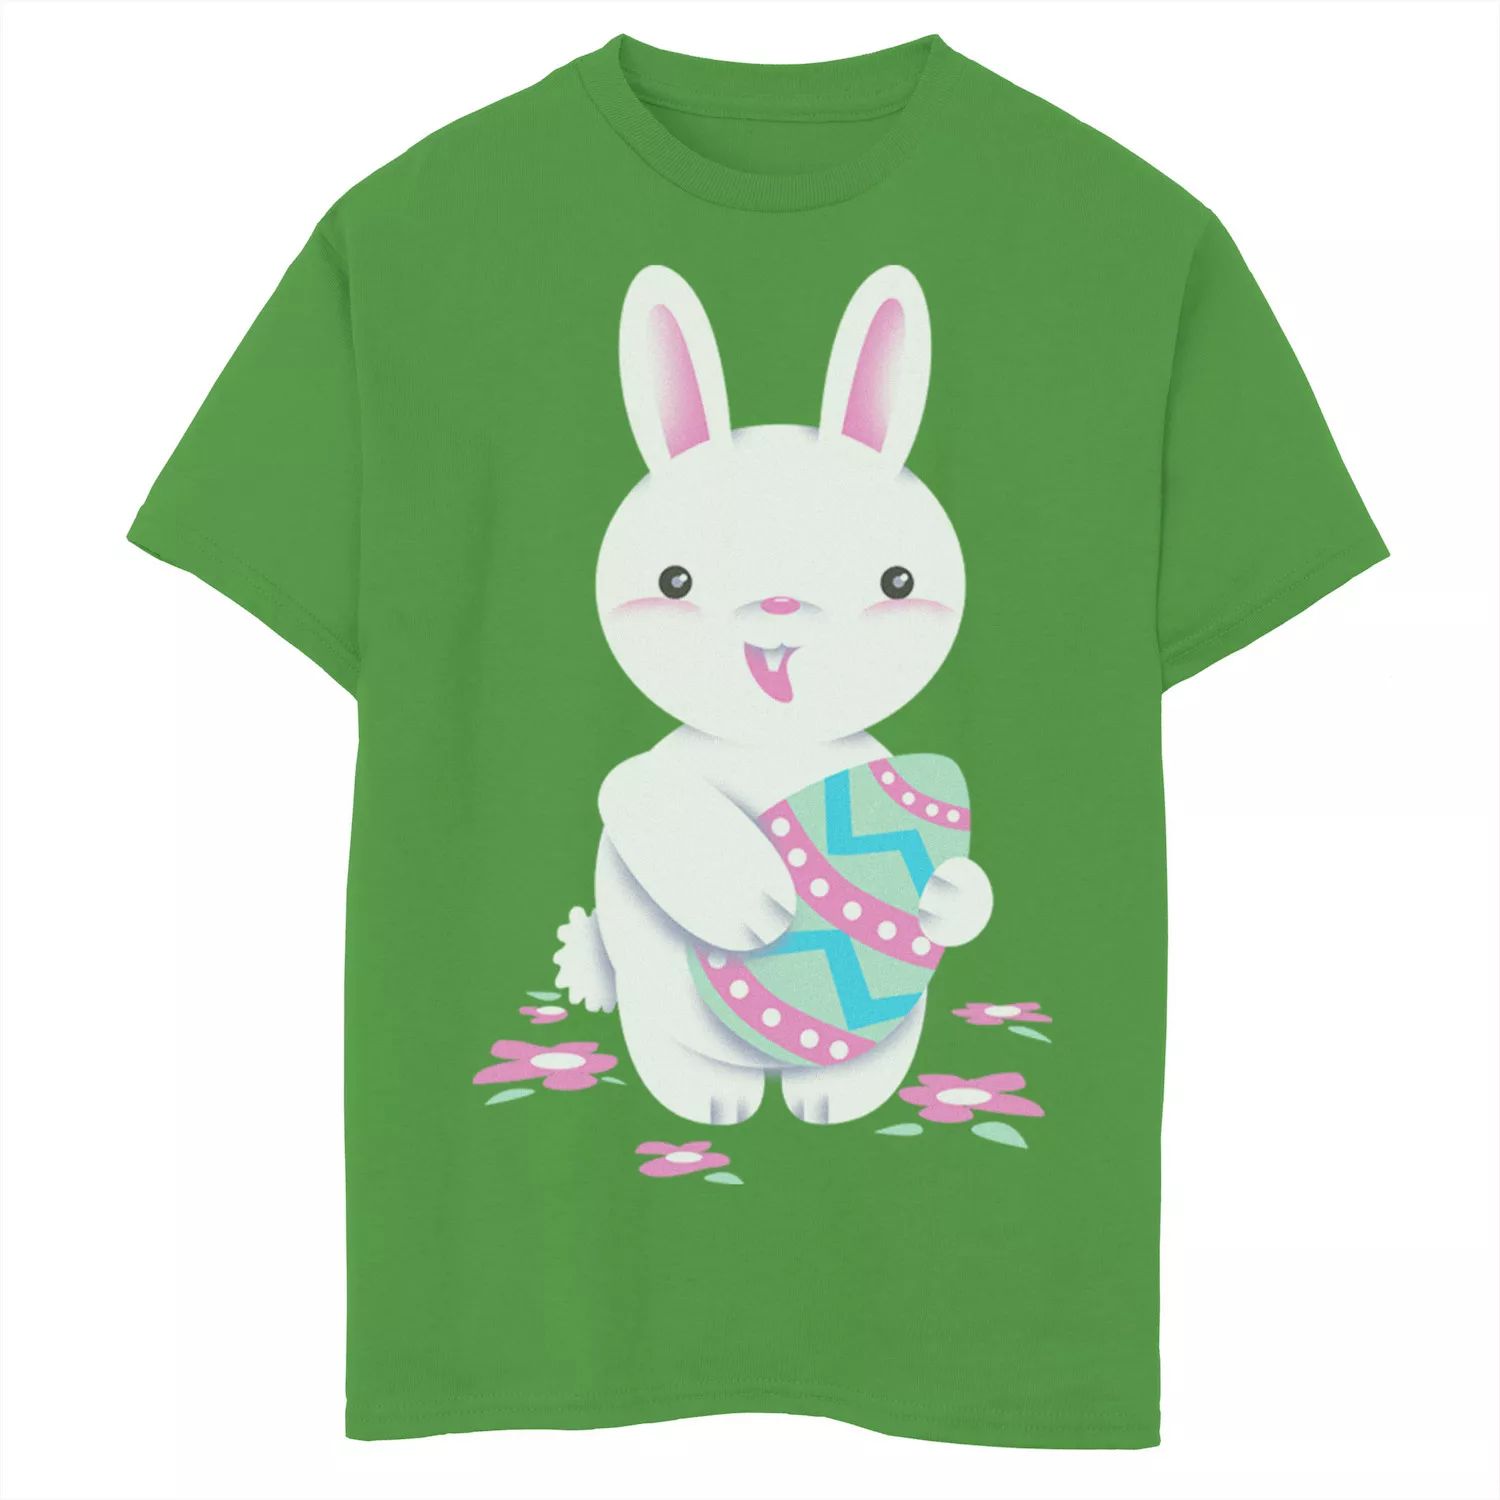 Футболка с рисунком «Пасхальный кролик и яйцо» для мальчиков 8–20 лет Licensed Character футболка с рисунком пасхальный бант для мальчиков 8–20 лет chicka bow wow licensed character